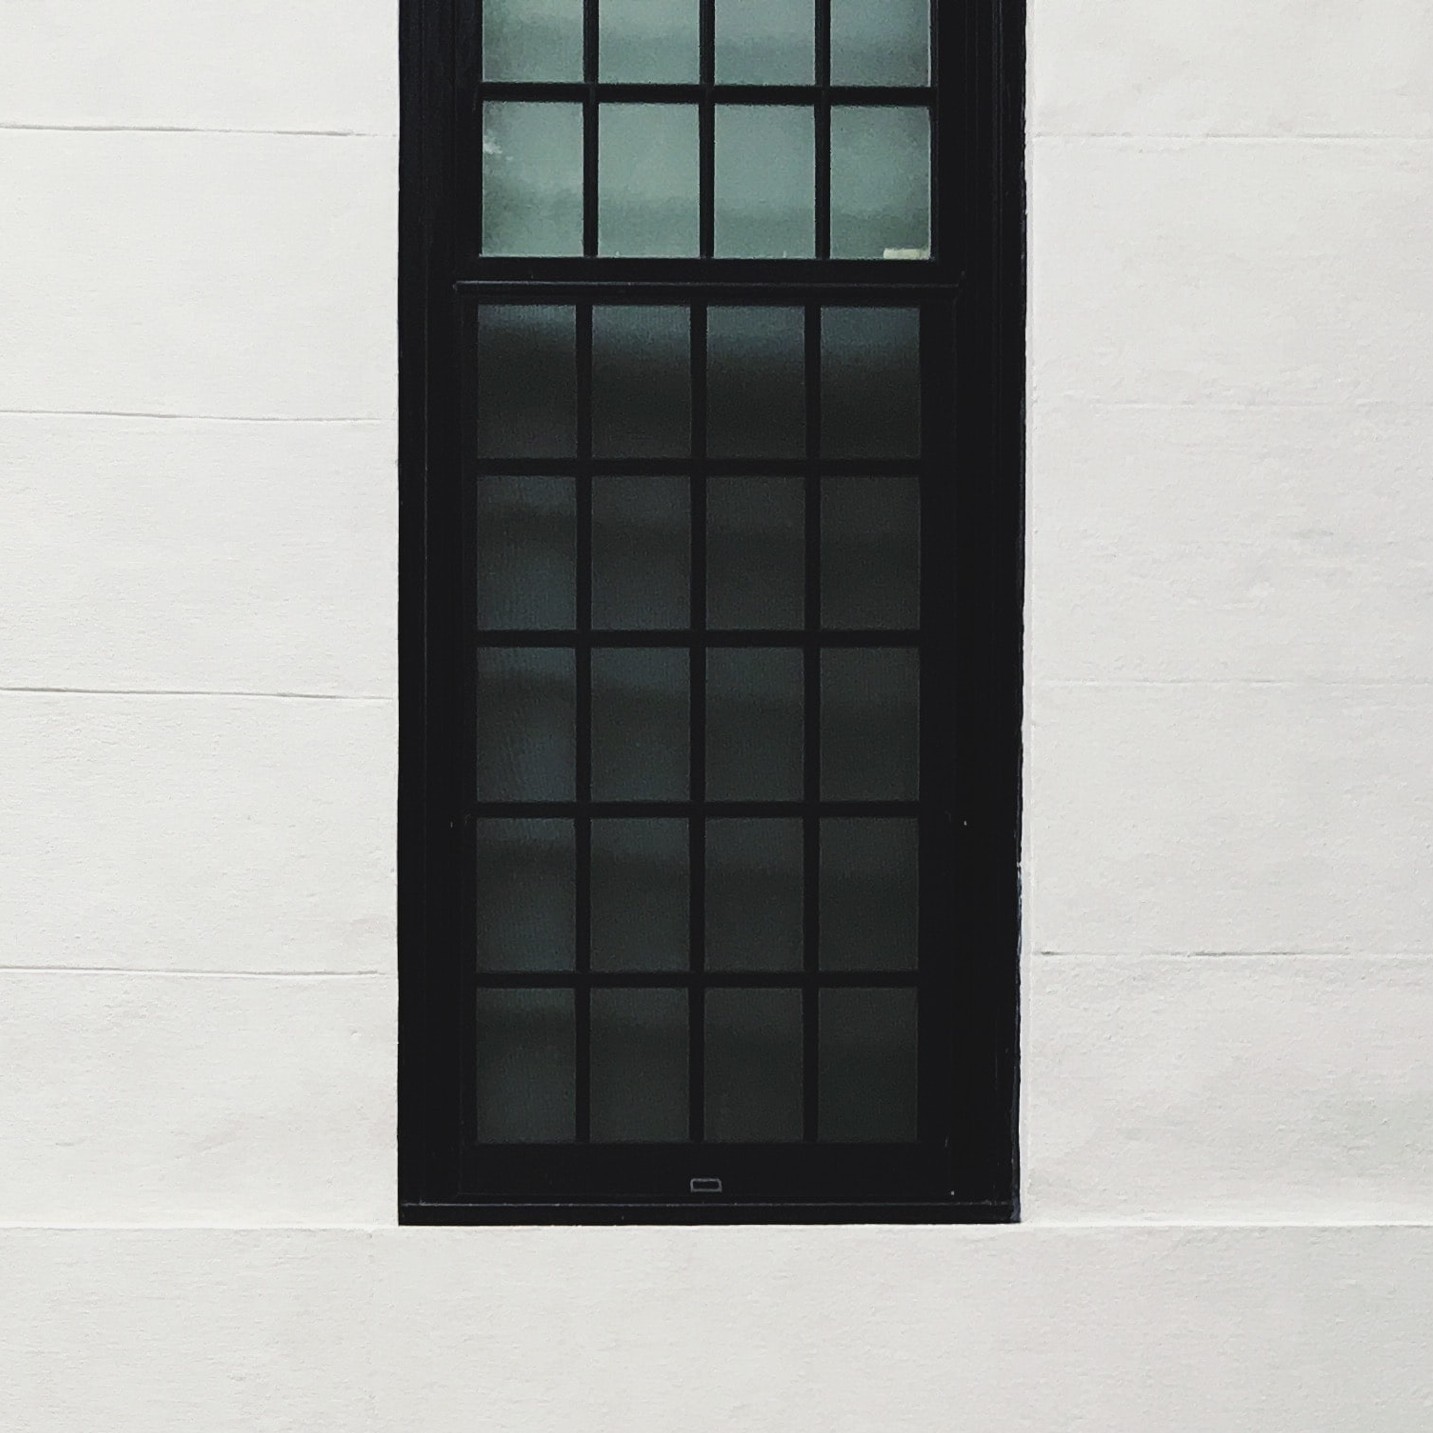 design-de-espaços-comerciais-medd-design-black-window